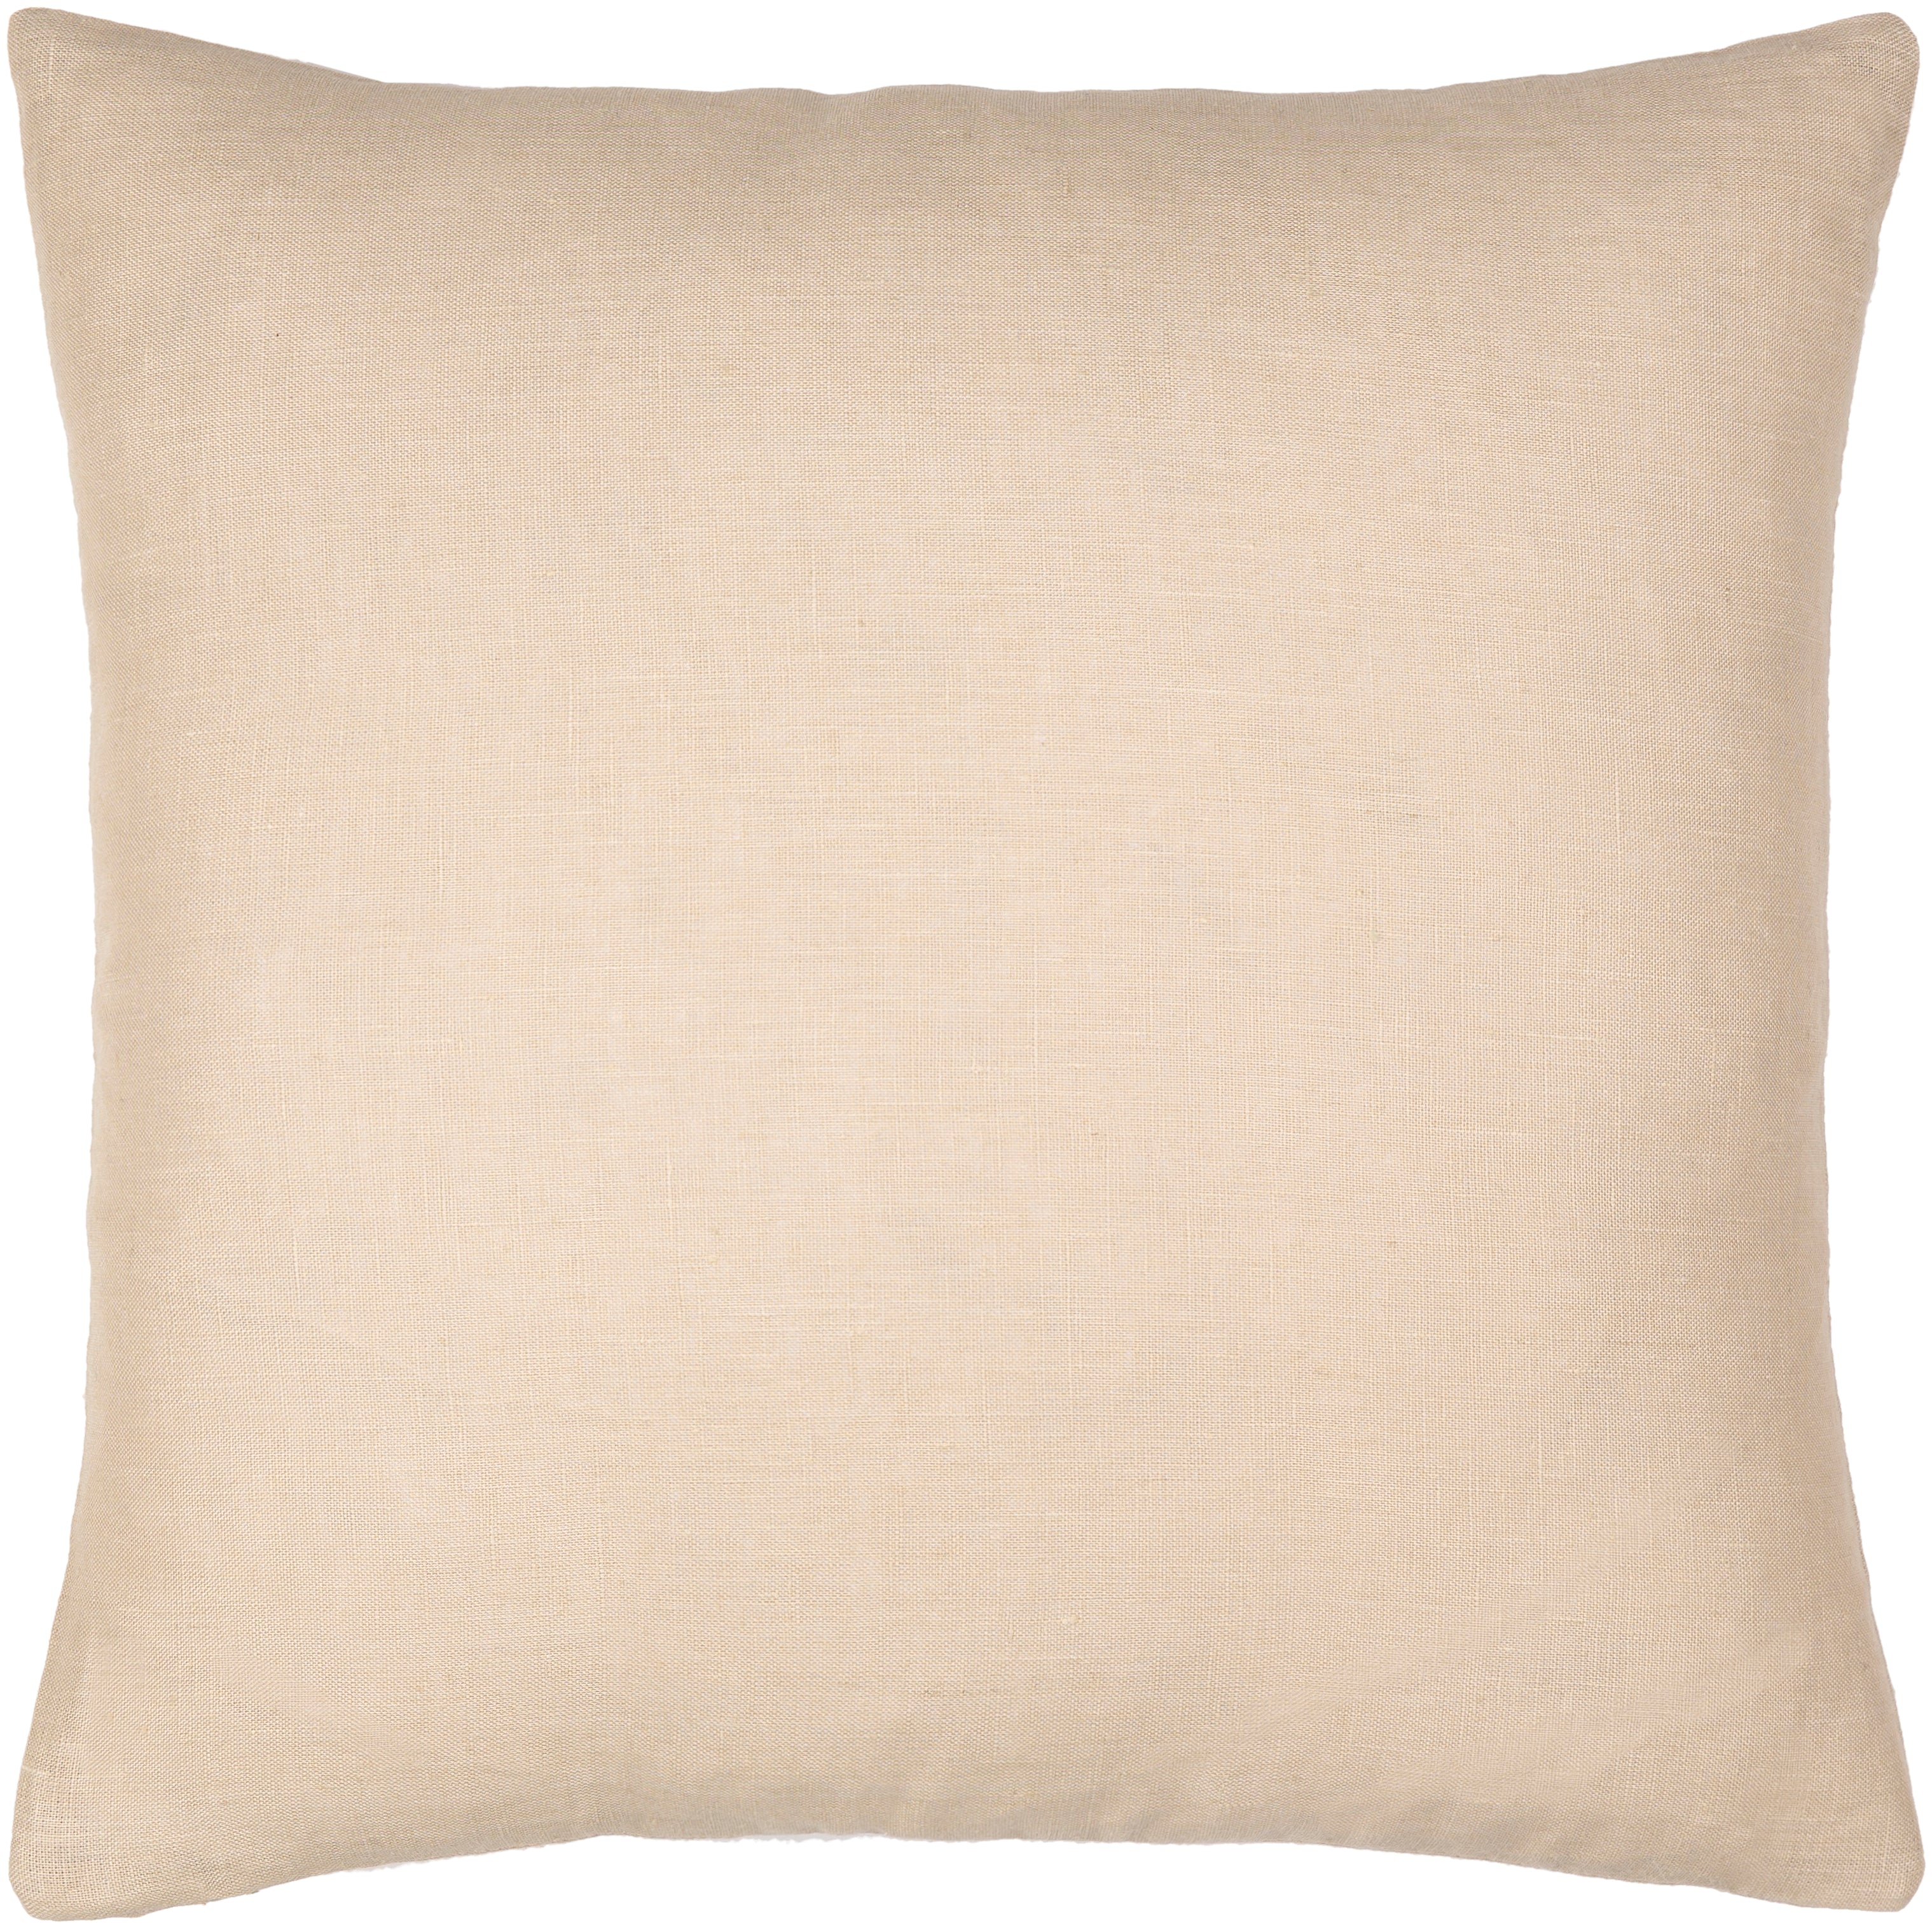 Linen Solid Pillow